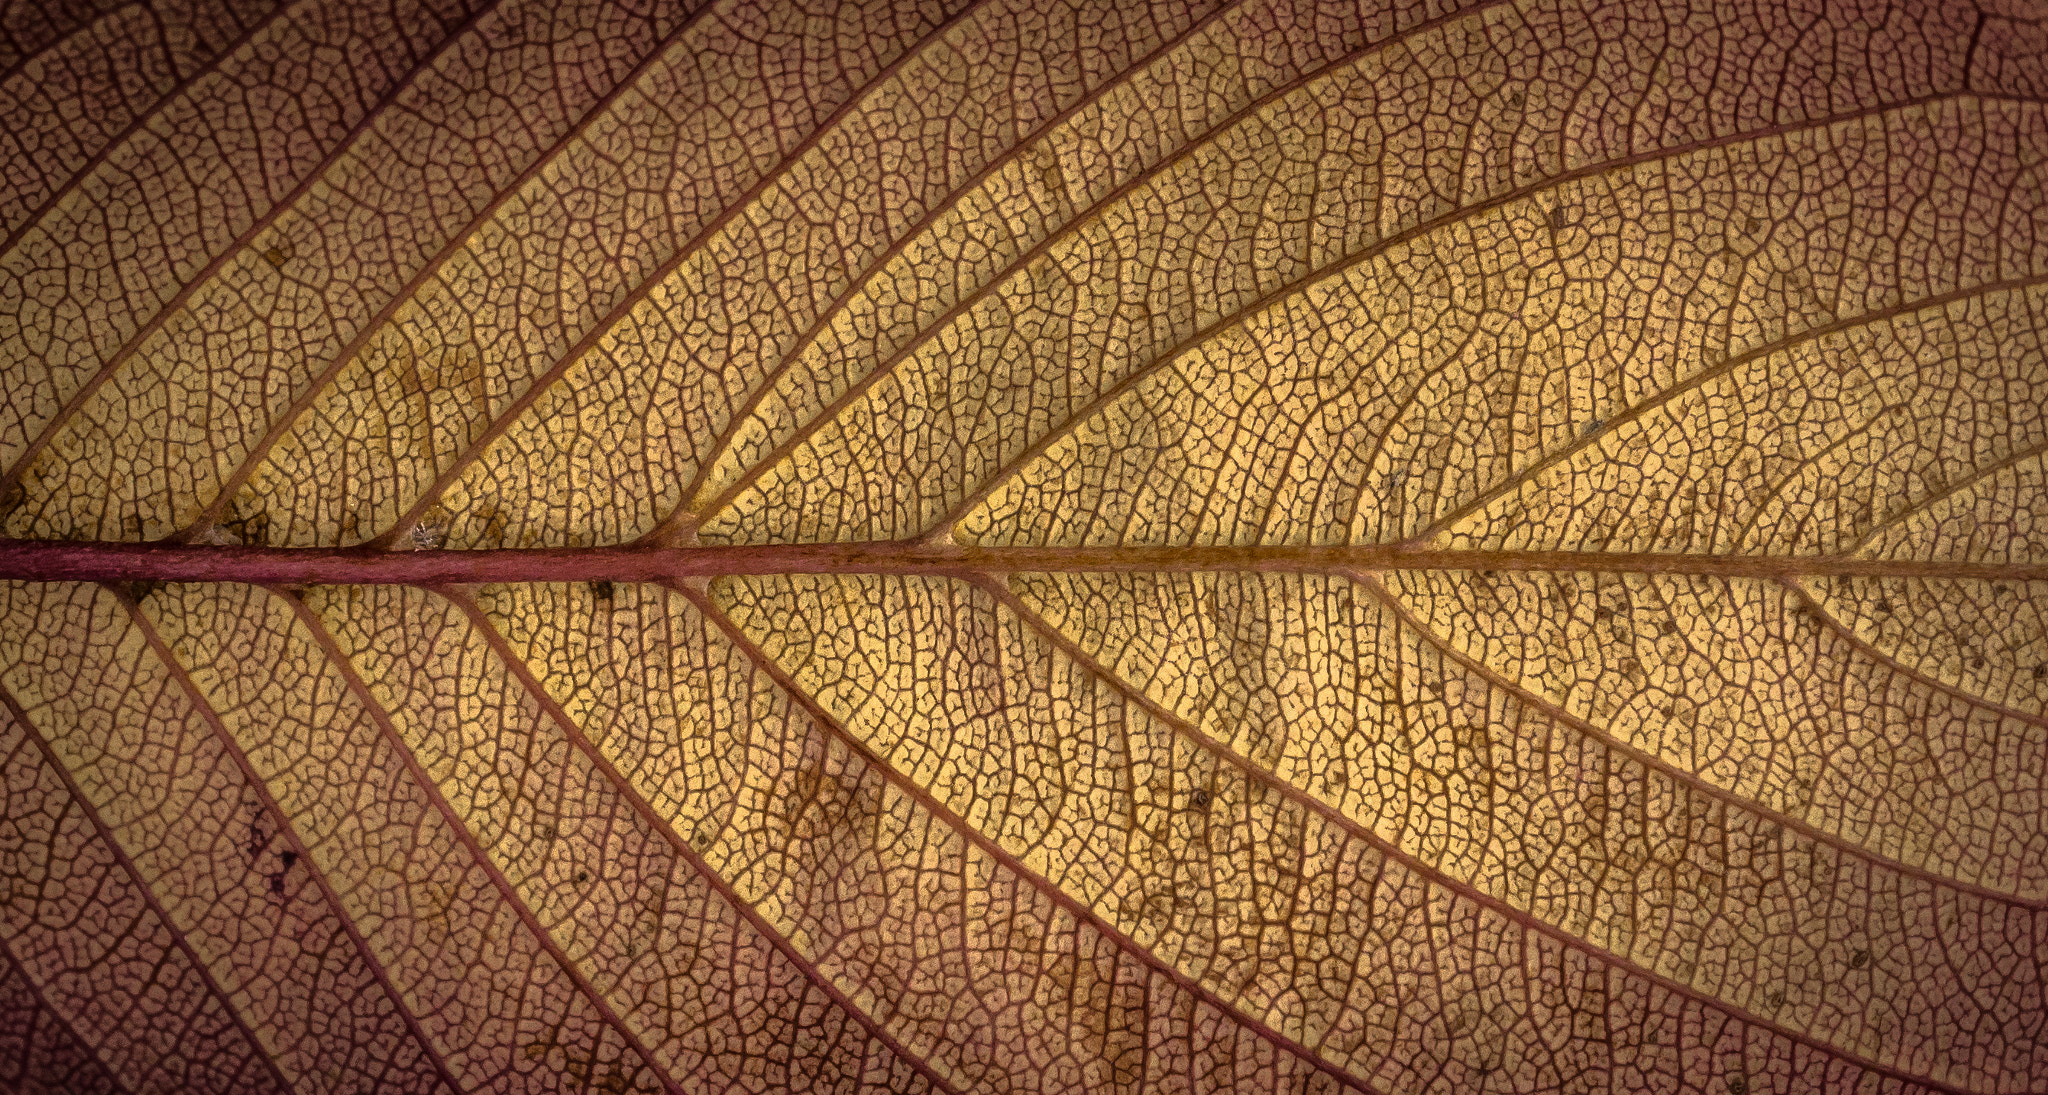 Sony Alpha NEX-5N sample photo. Autumn texture photography